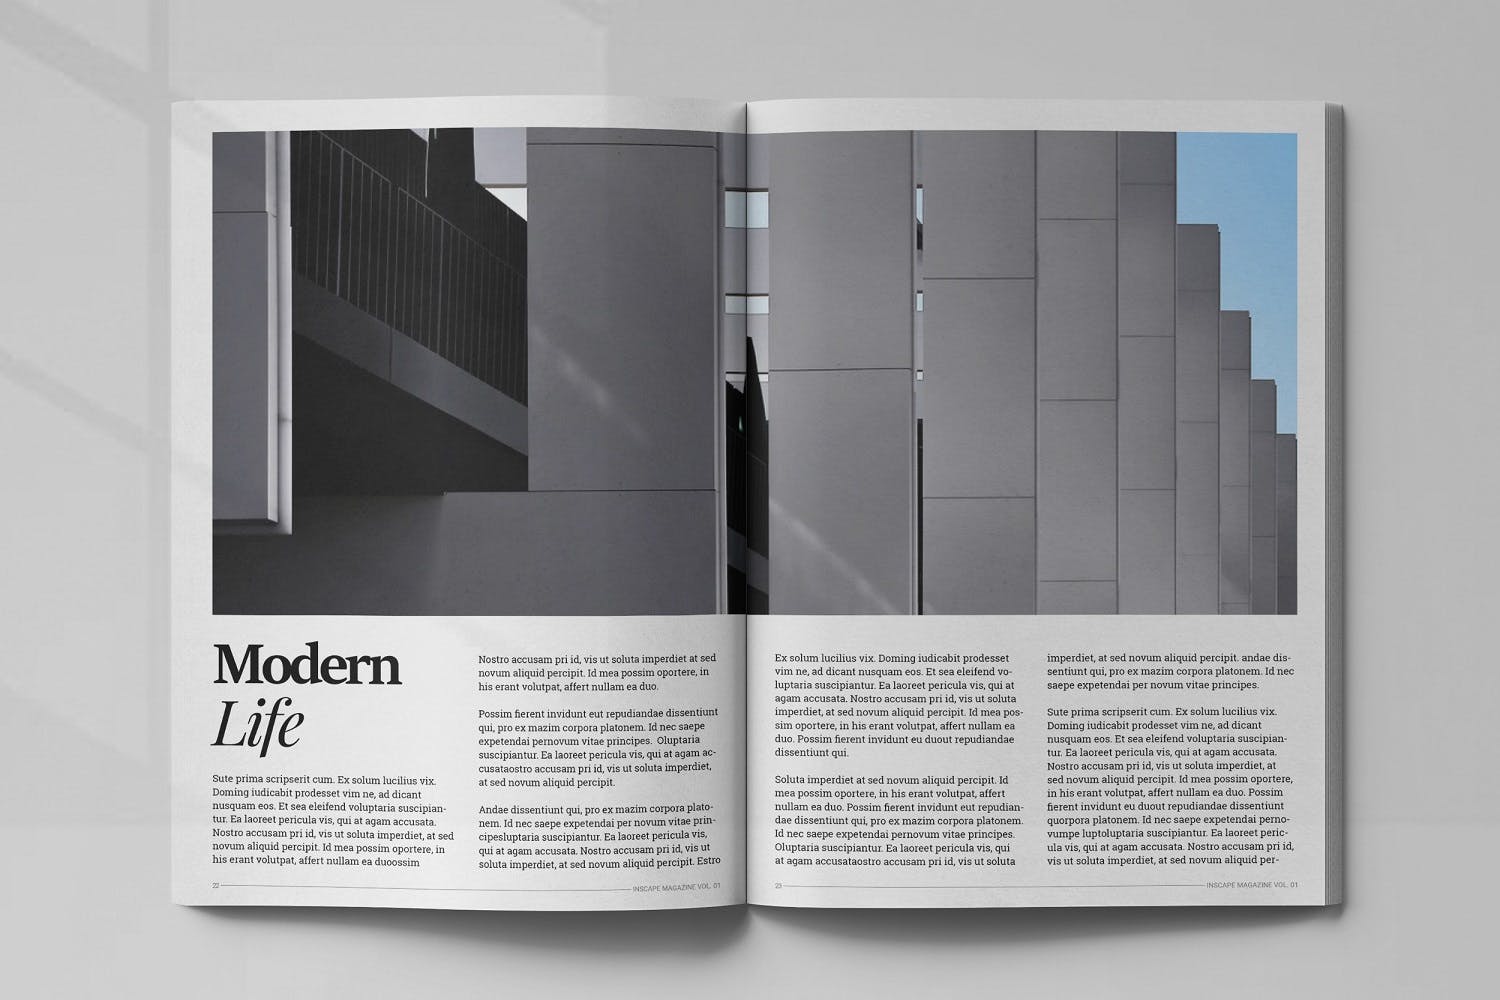 室内设计主题素材库精选杂志排版设计模板 Inscape Interior Magazine插图(11)